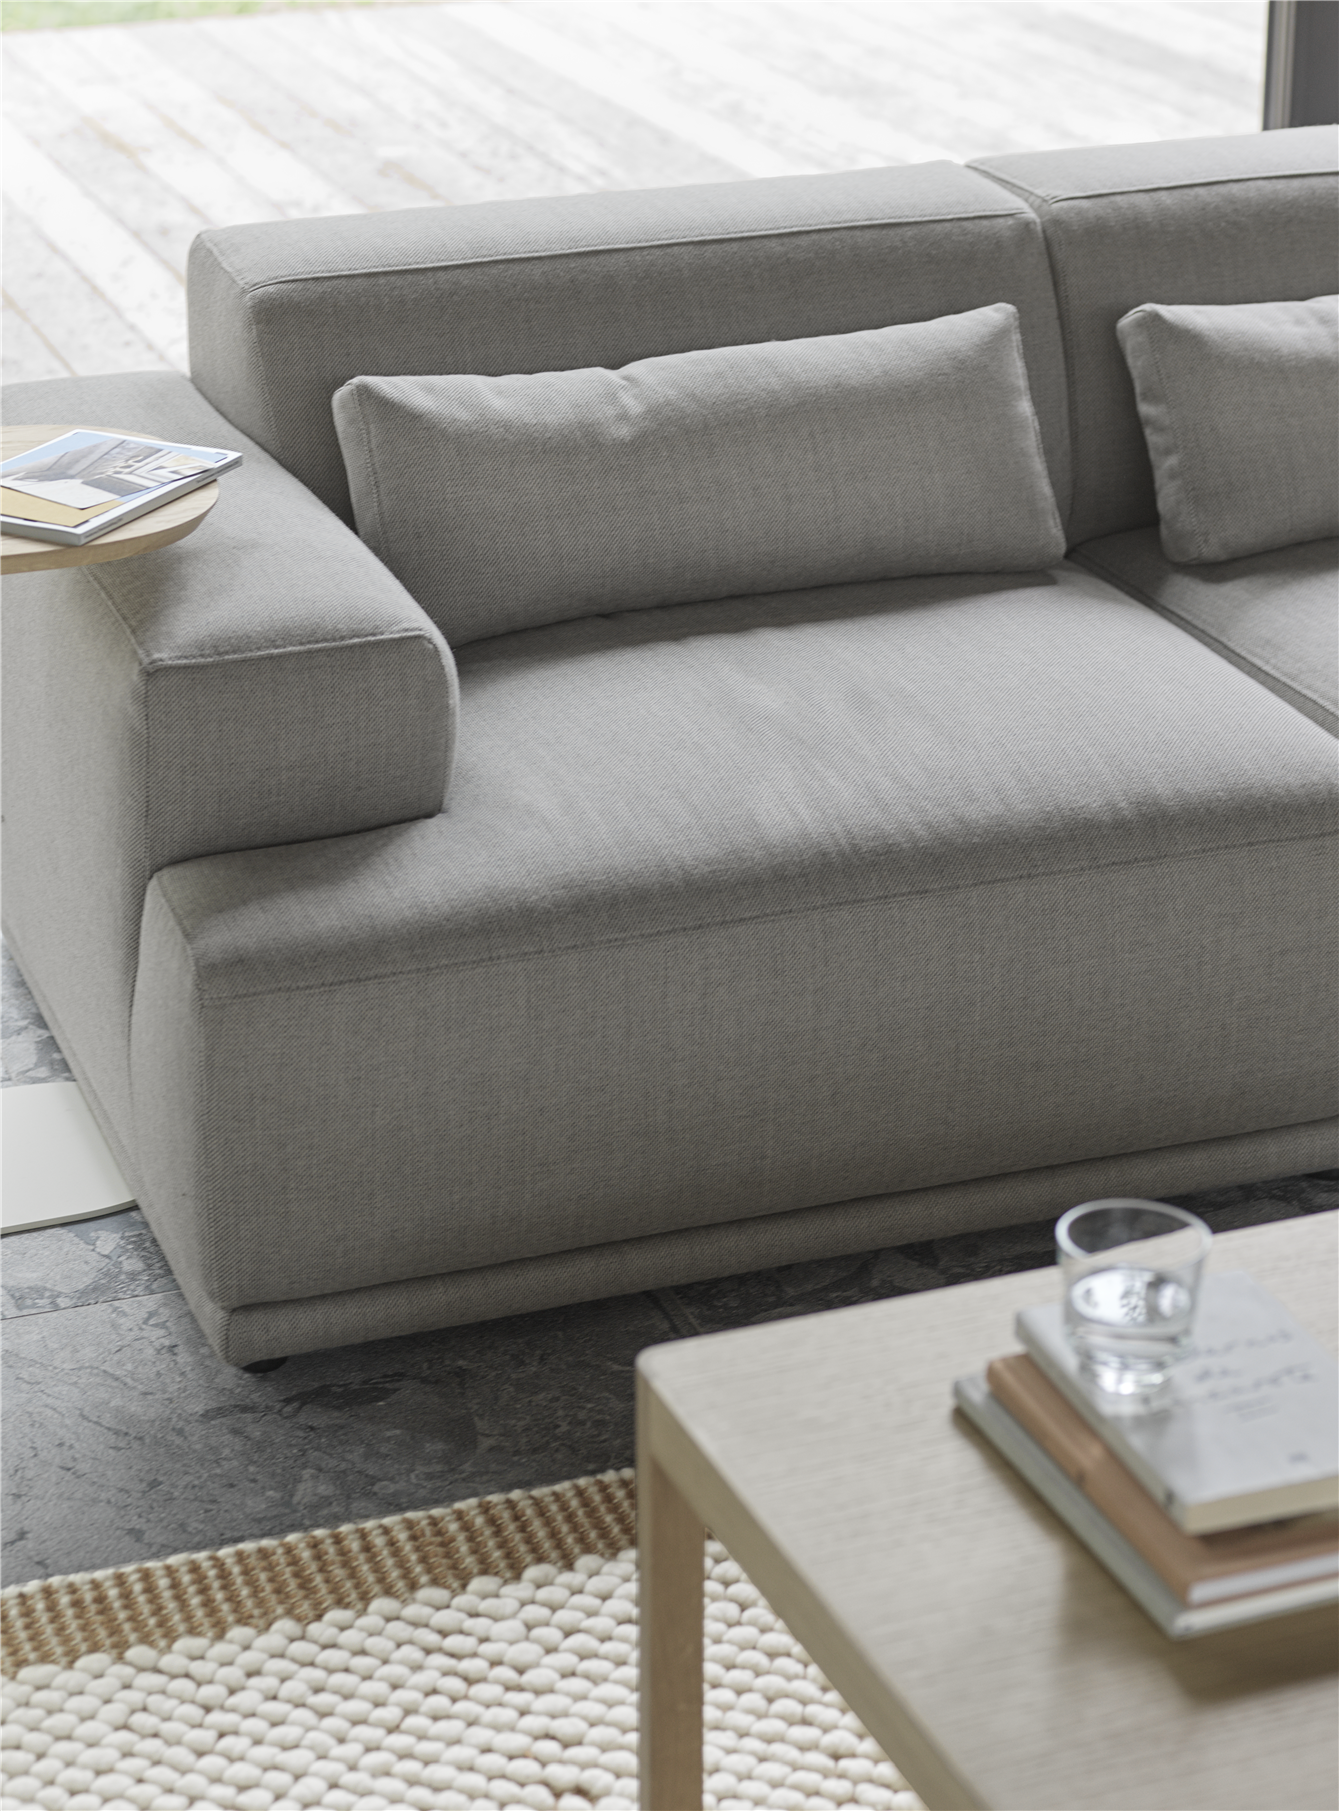 Connect Soft 3er L-Sofa in Combo 3: Re-Wool 128 präsentiert im Onlineshop von KAQTU Design AG. L-Sofa links ist von Muuto